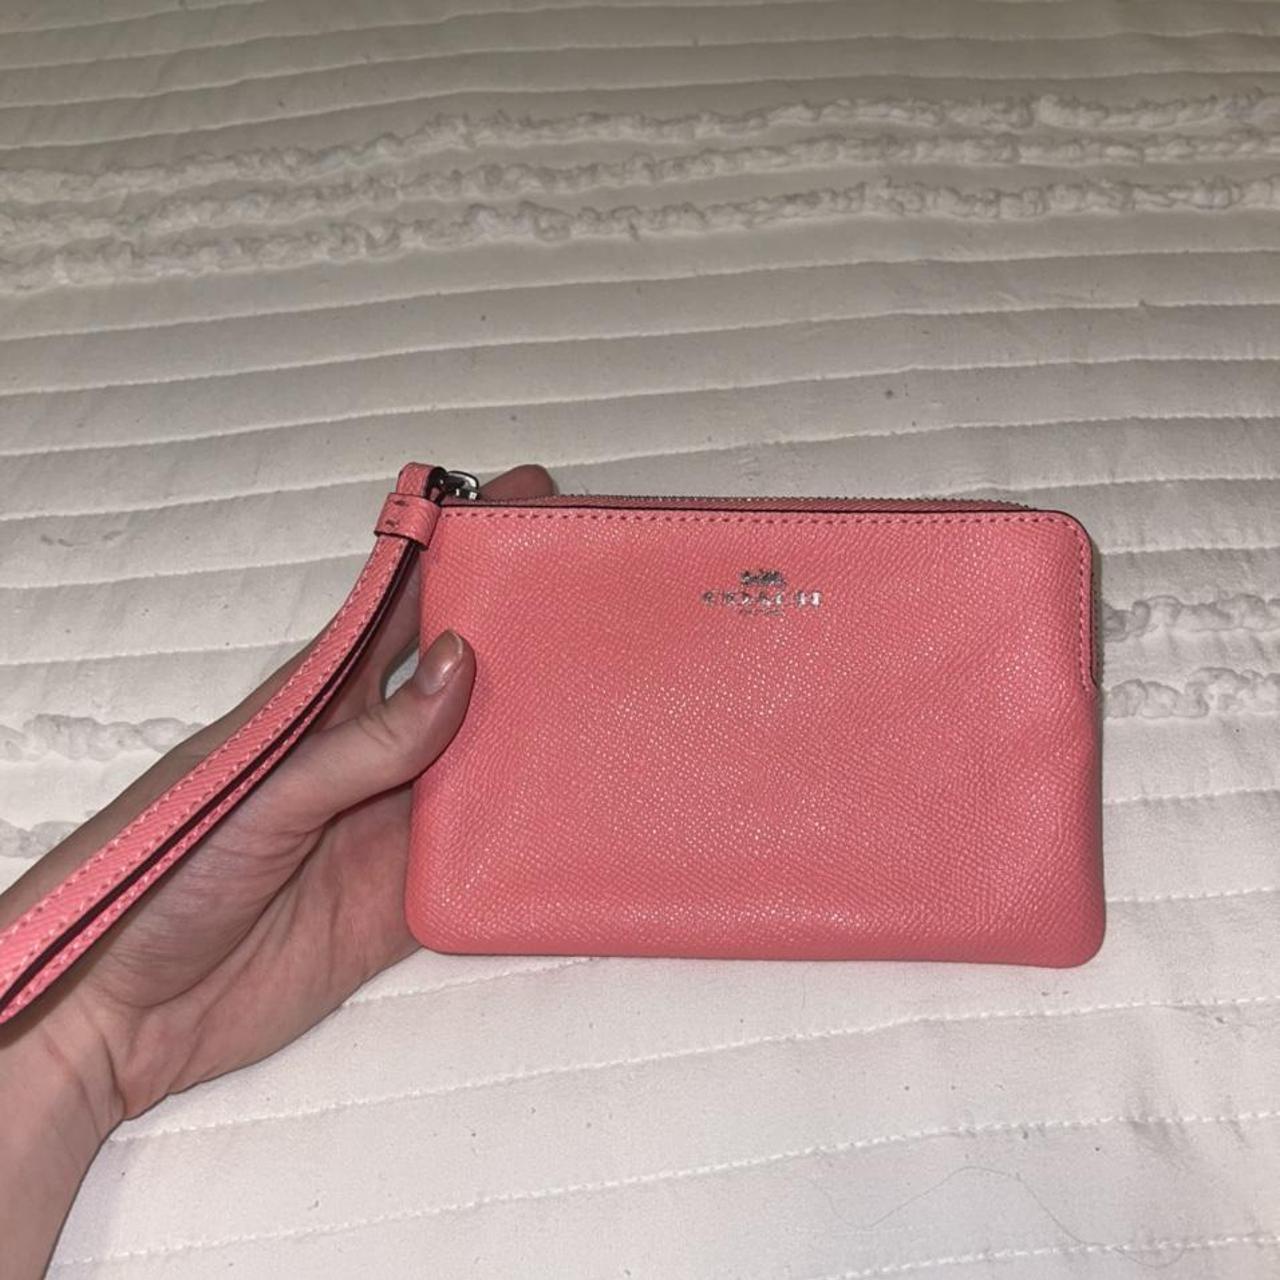 Pink Coach wallet wristlet OPEN TO OFFERS! 100% - Depop